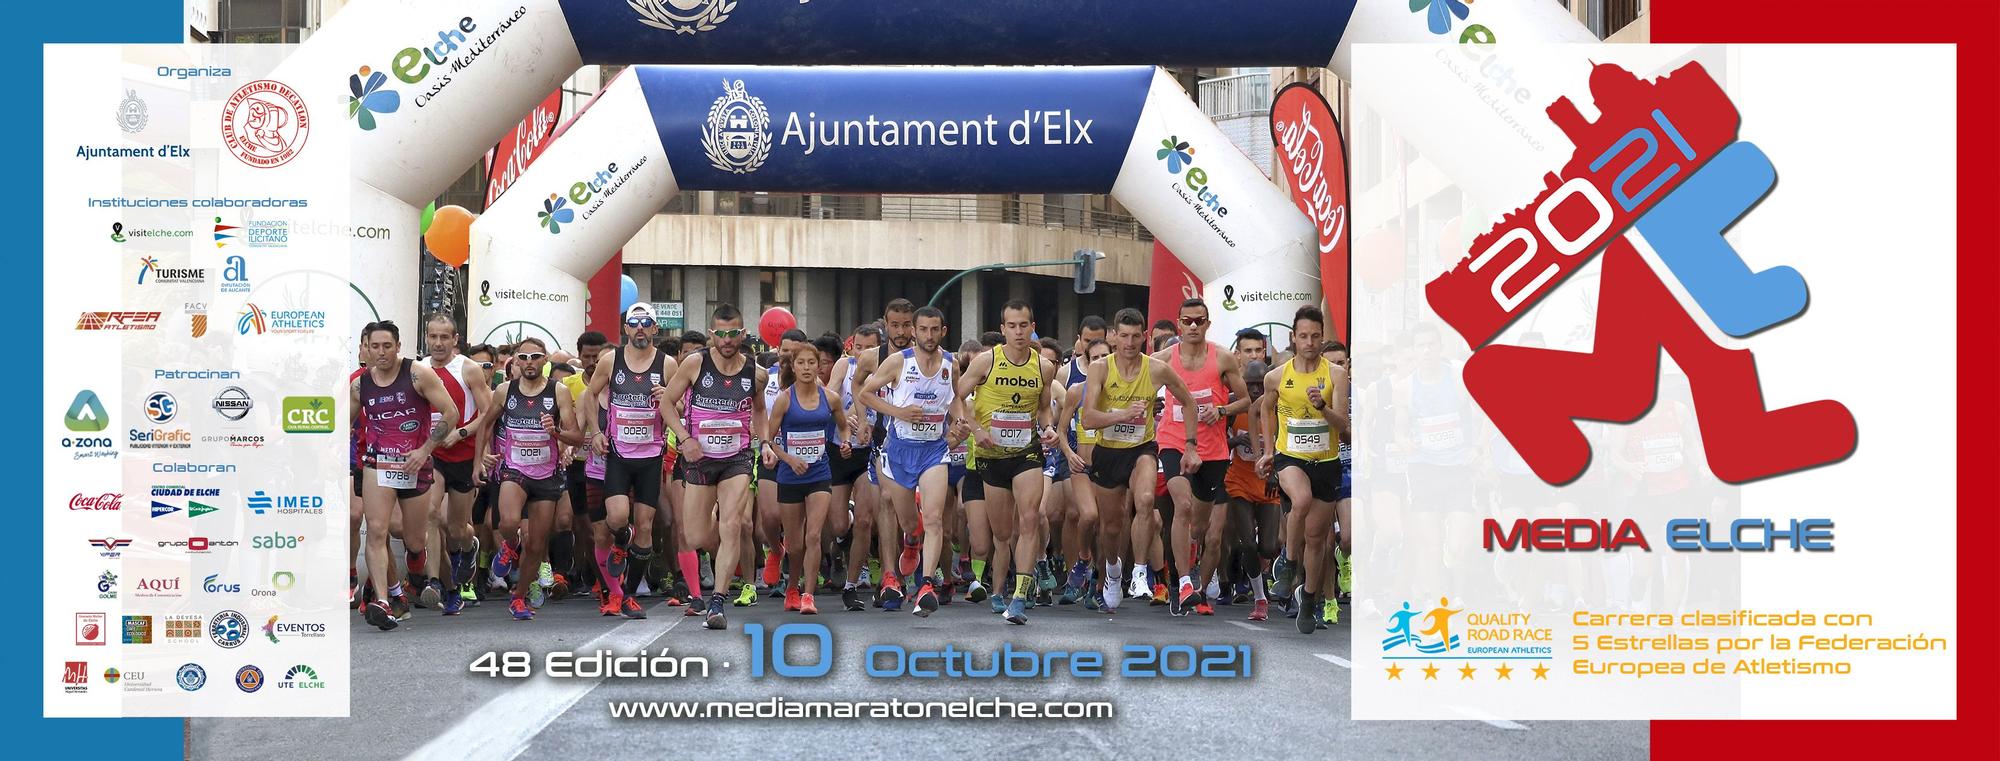 Elche celebra su 48 Media Maratón el 10 de octubre - Superdeporte